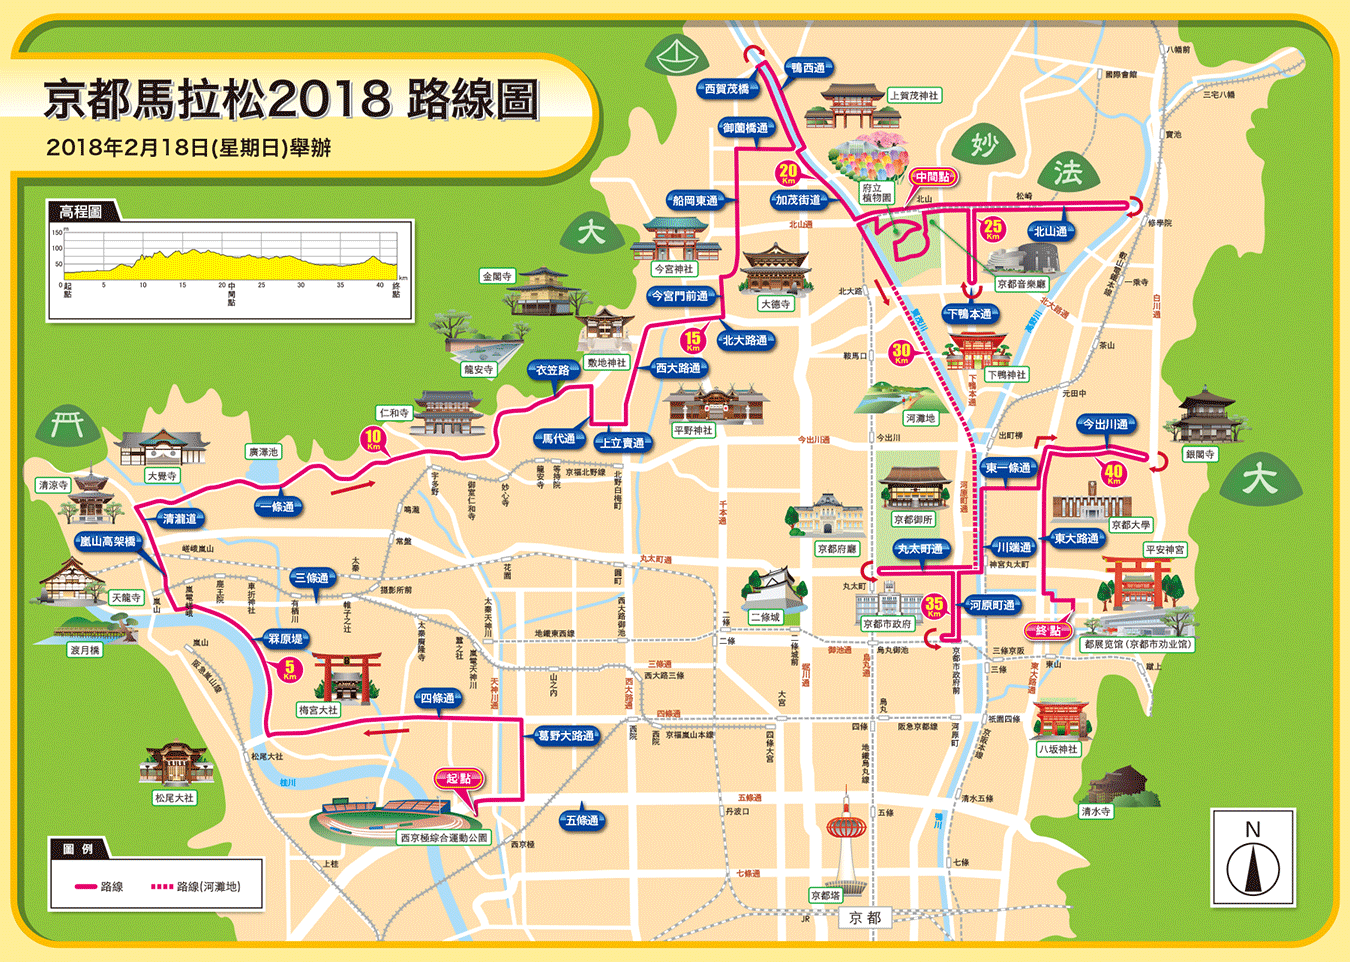 京都馬拉松2018 路線圖